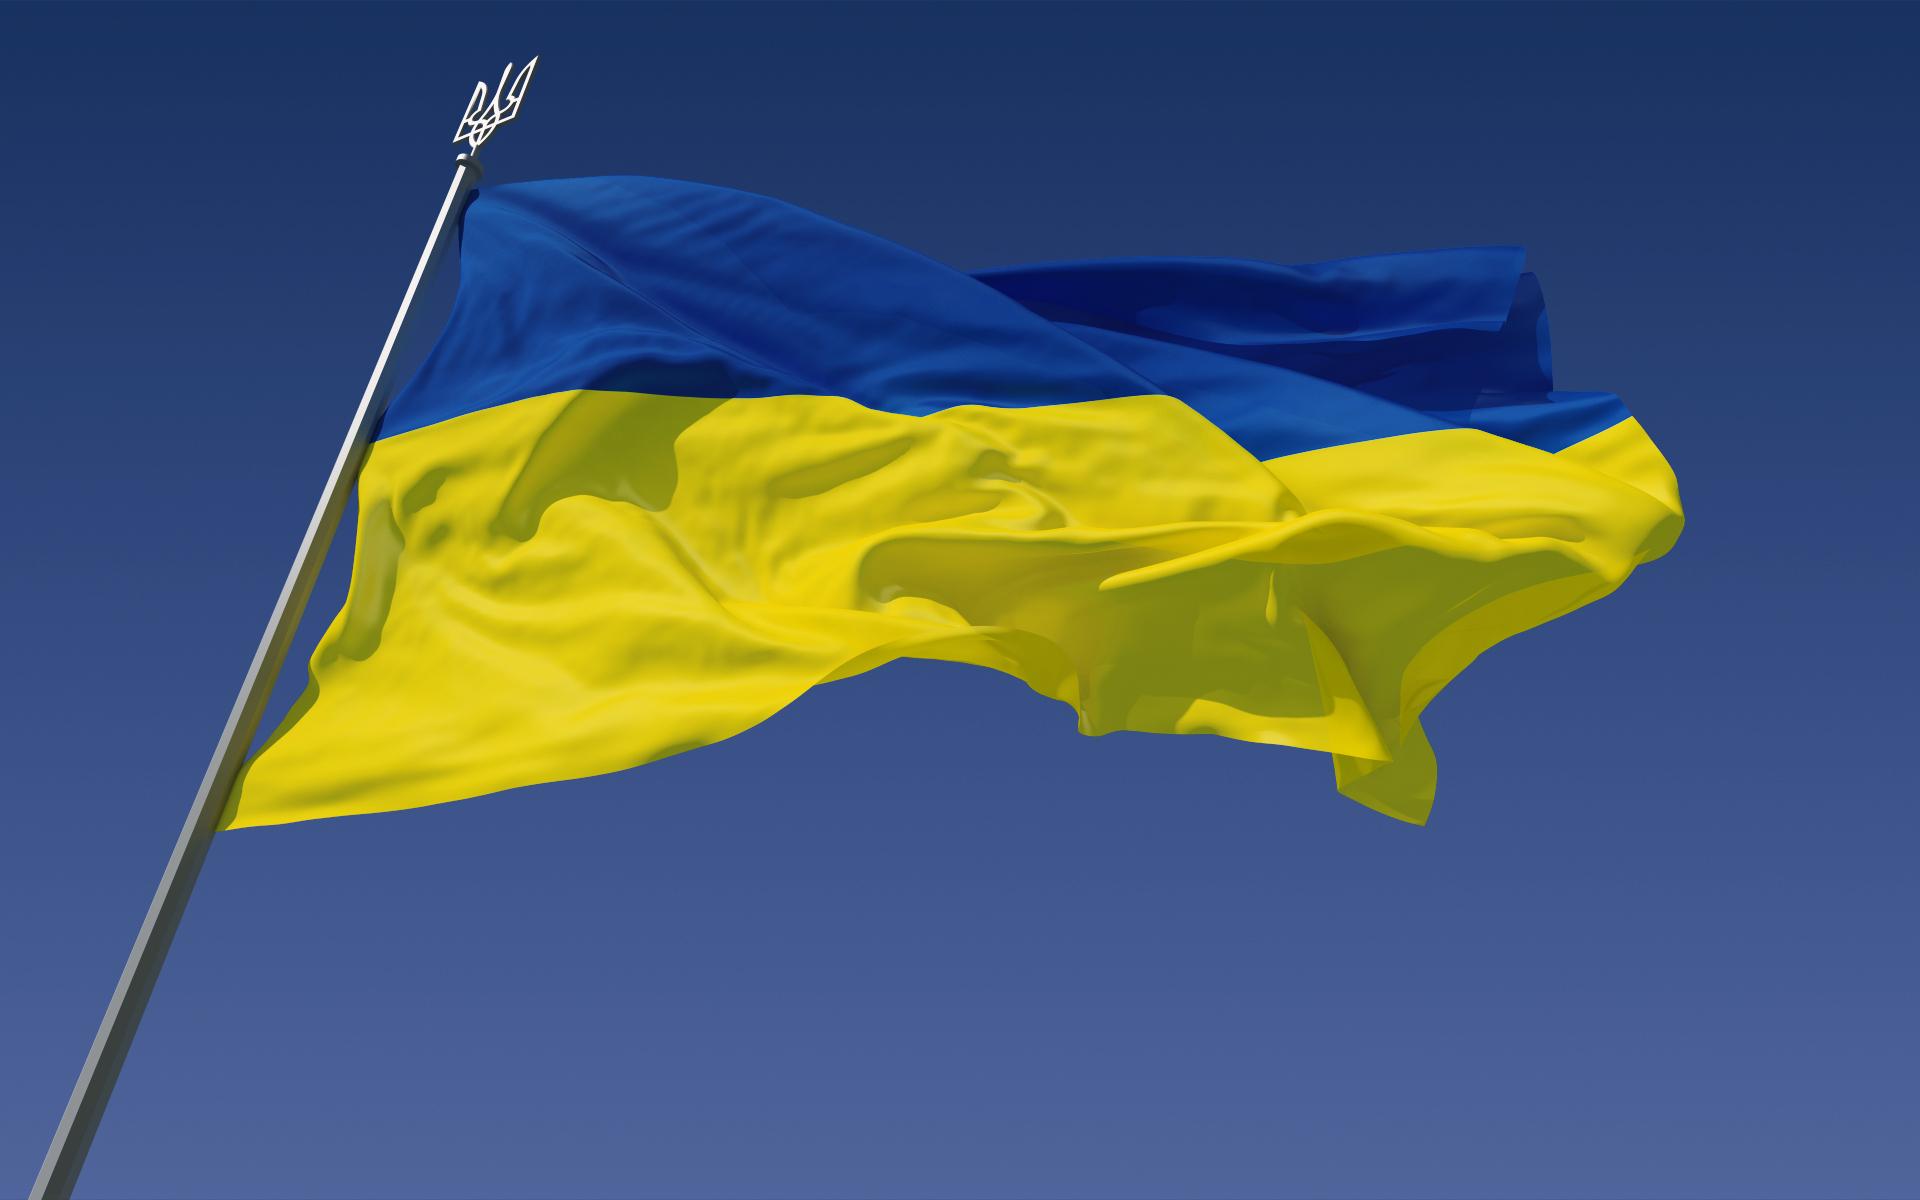 "Россия предложит: забирайте свой Донбасс, но откажитесь от Крыма", - Аваков жестко предупредил Кремль, что Украина никогда не отдаст свои территории оккупанту